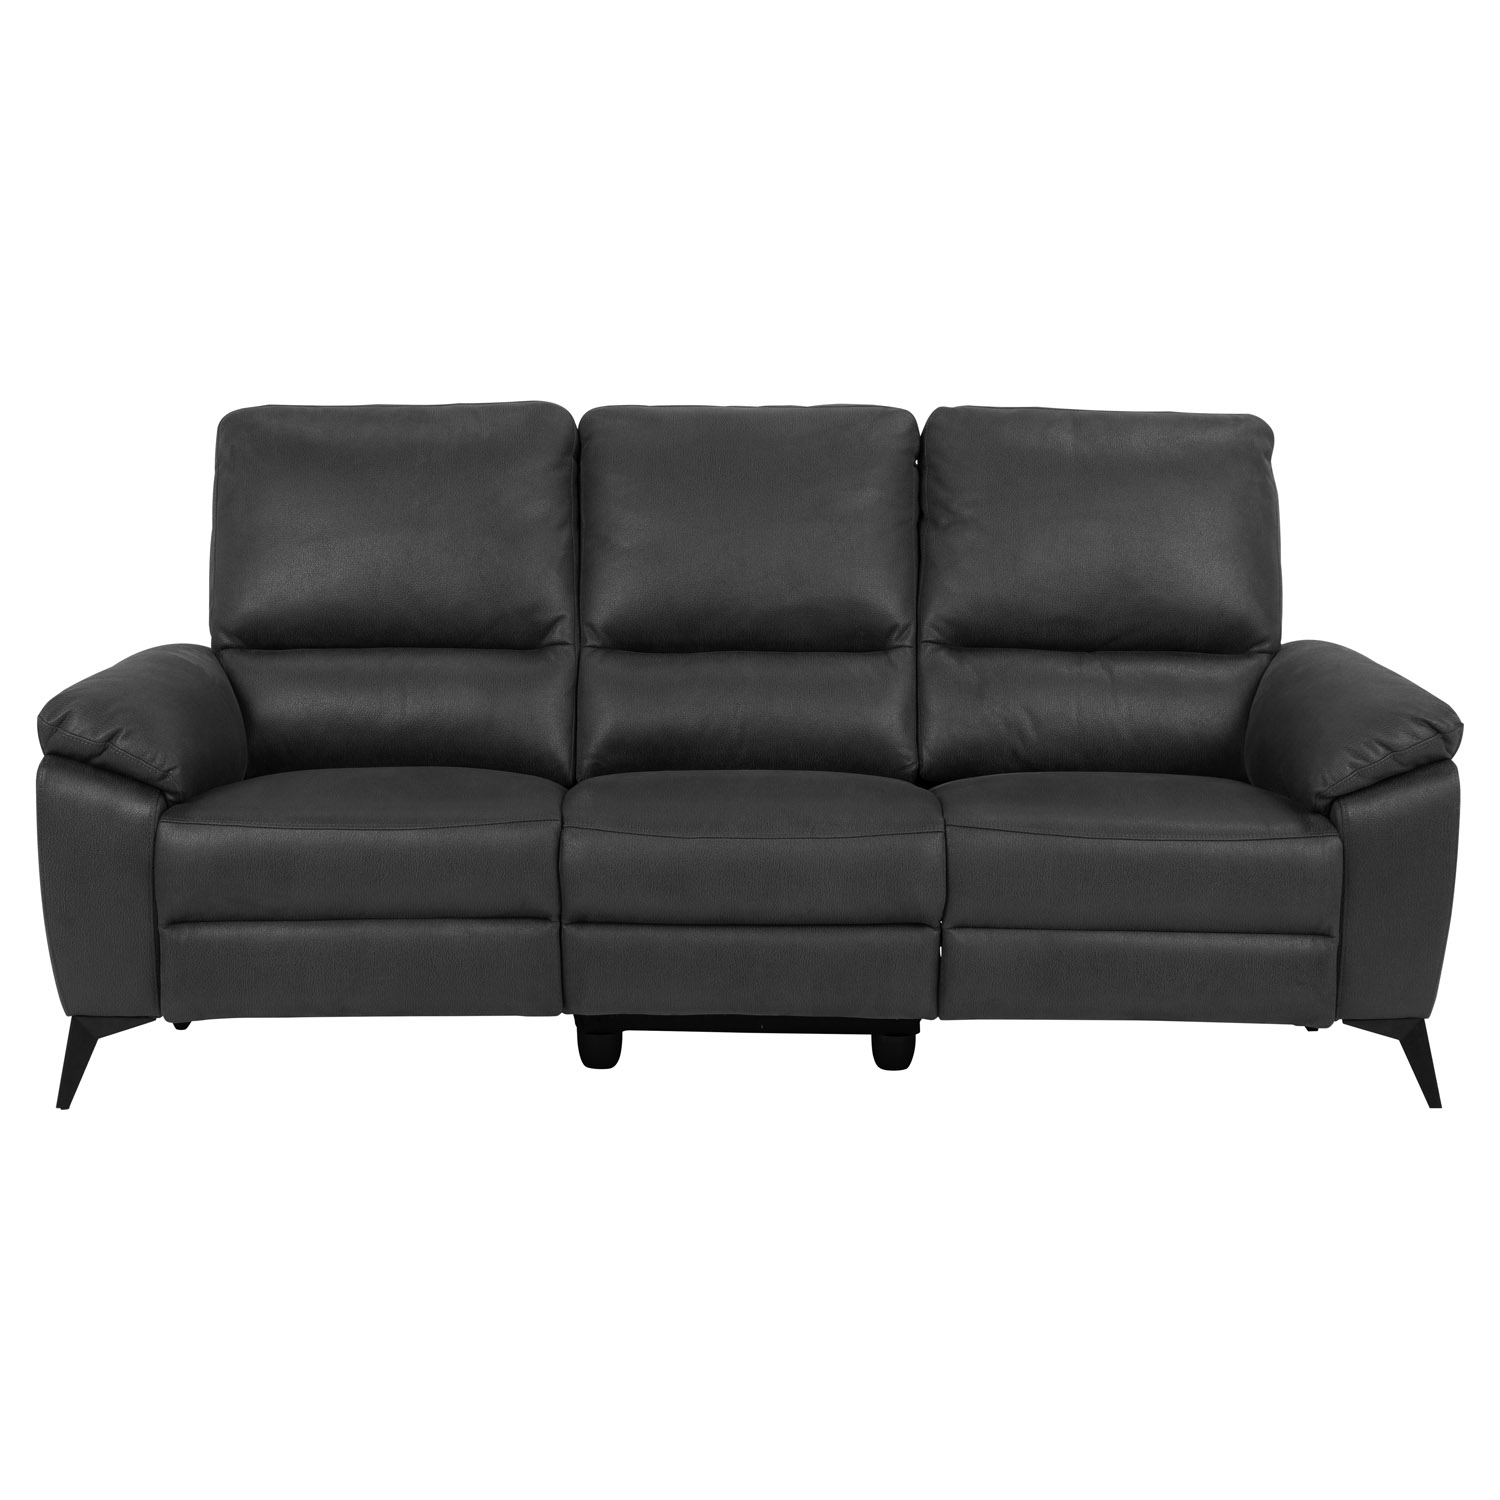 ACT NORDIC Rana 3 pers. sofa, m. 2 elektriske reclinere og USB port C stik - grå polyester og sort metal